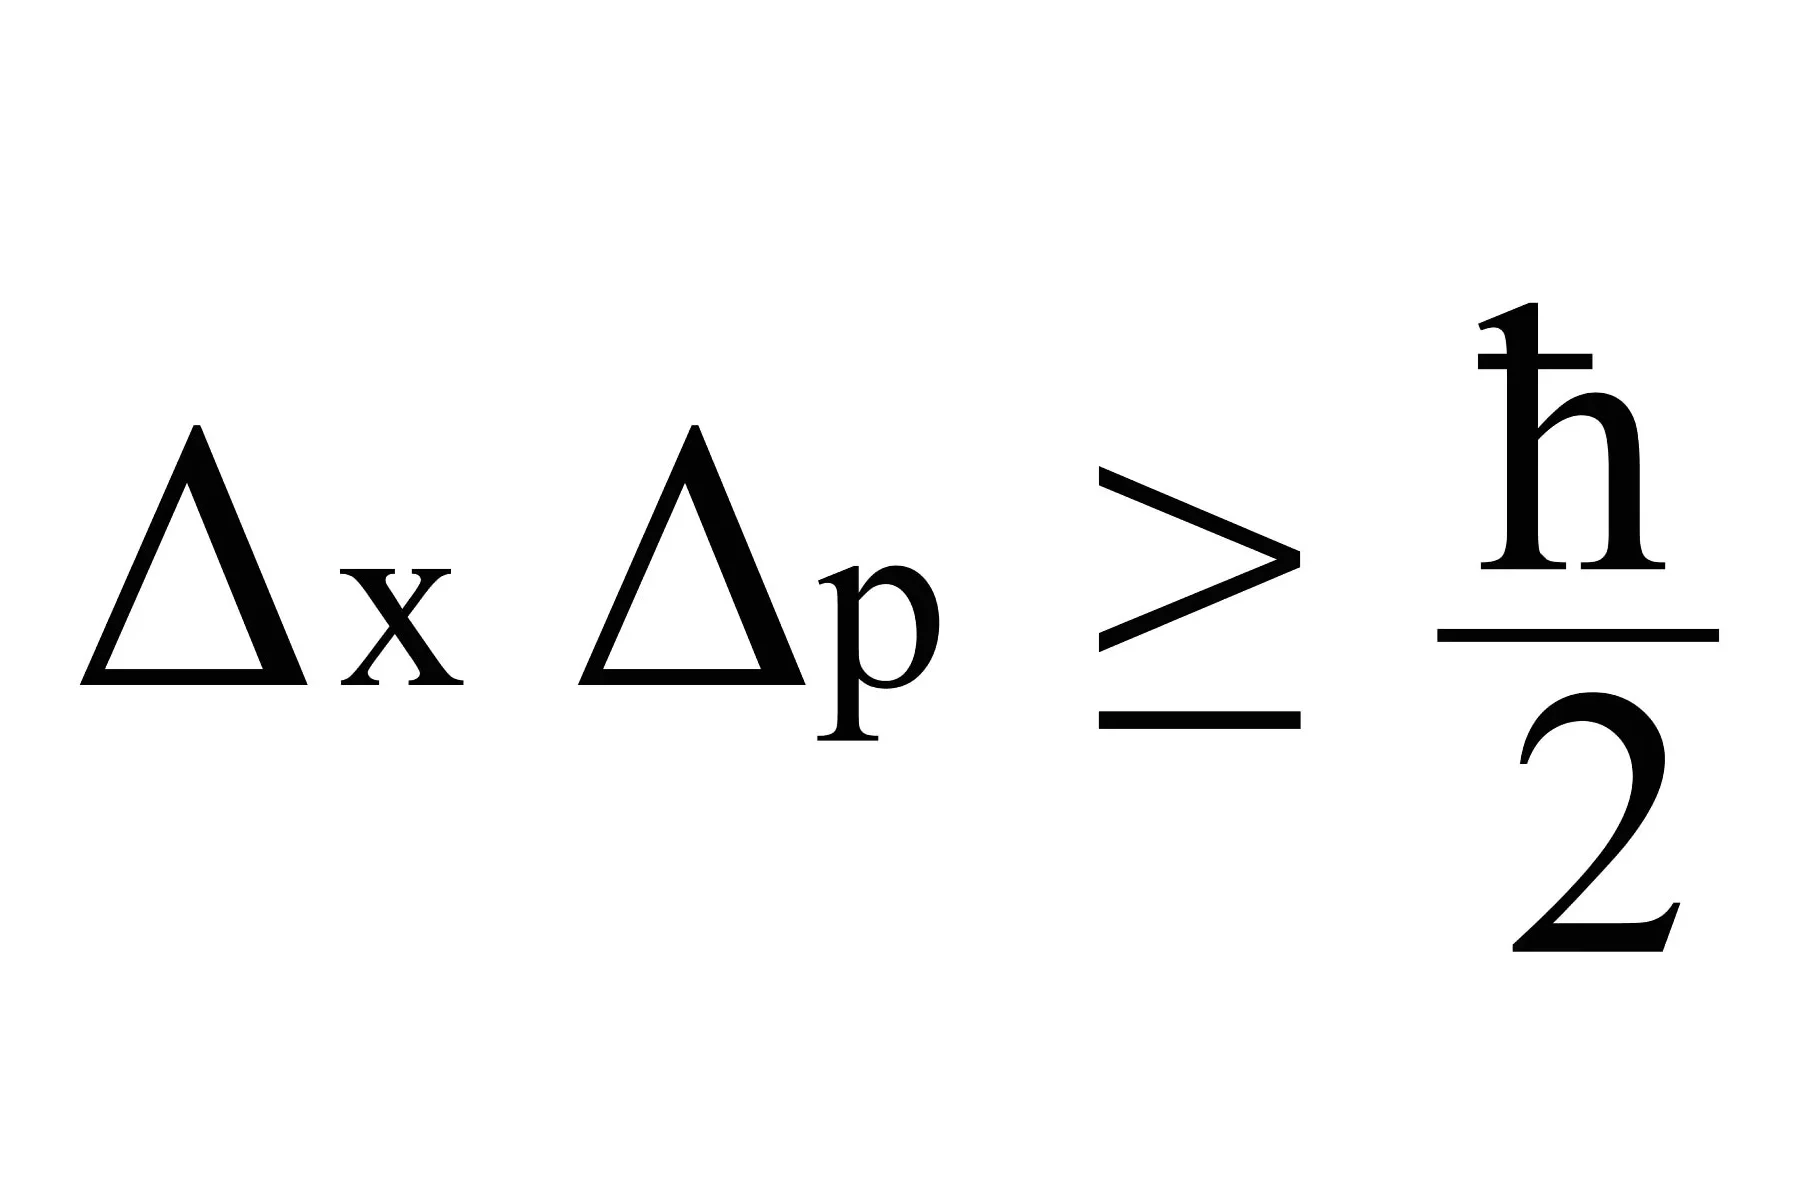 اصل عدم قطعیت هایزنبرگ بیان می کند اندازه گیری همزمان موقعیت دقیق و تکانه (یا سرعت) یک ذره غیرممکن است